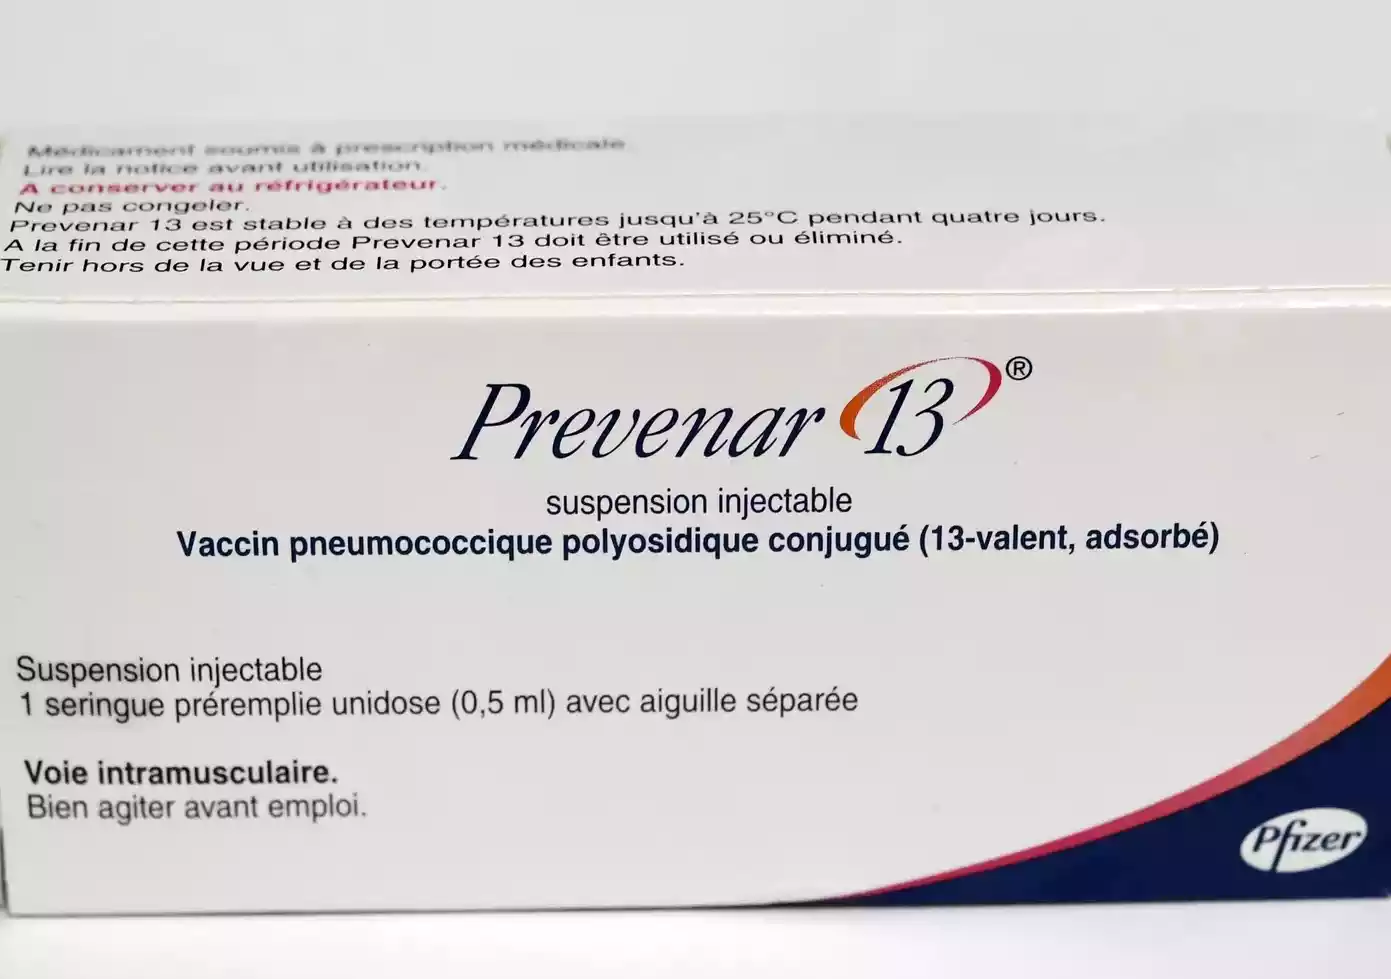 Το εμβόλιο Prevenar 13 προστατεύει από 13 ορότυπους πνευμονιοκόκκου